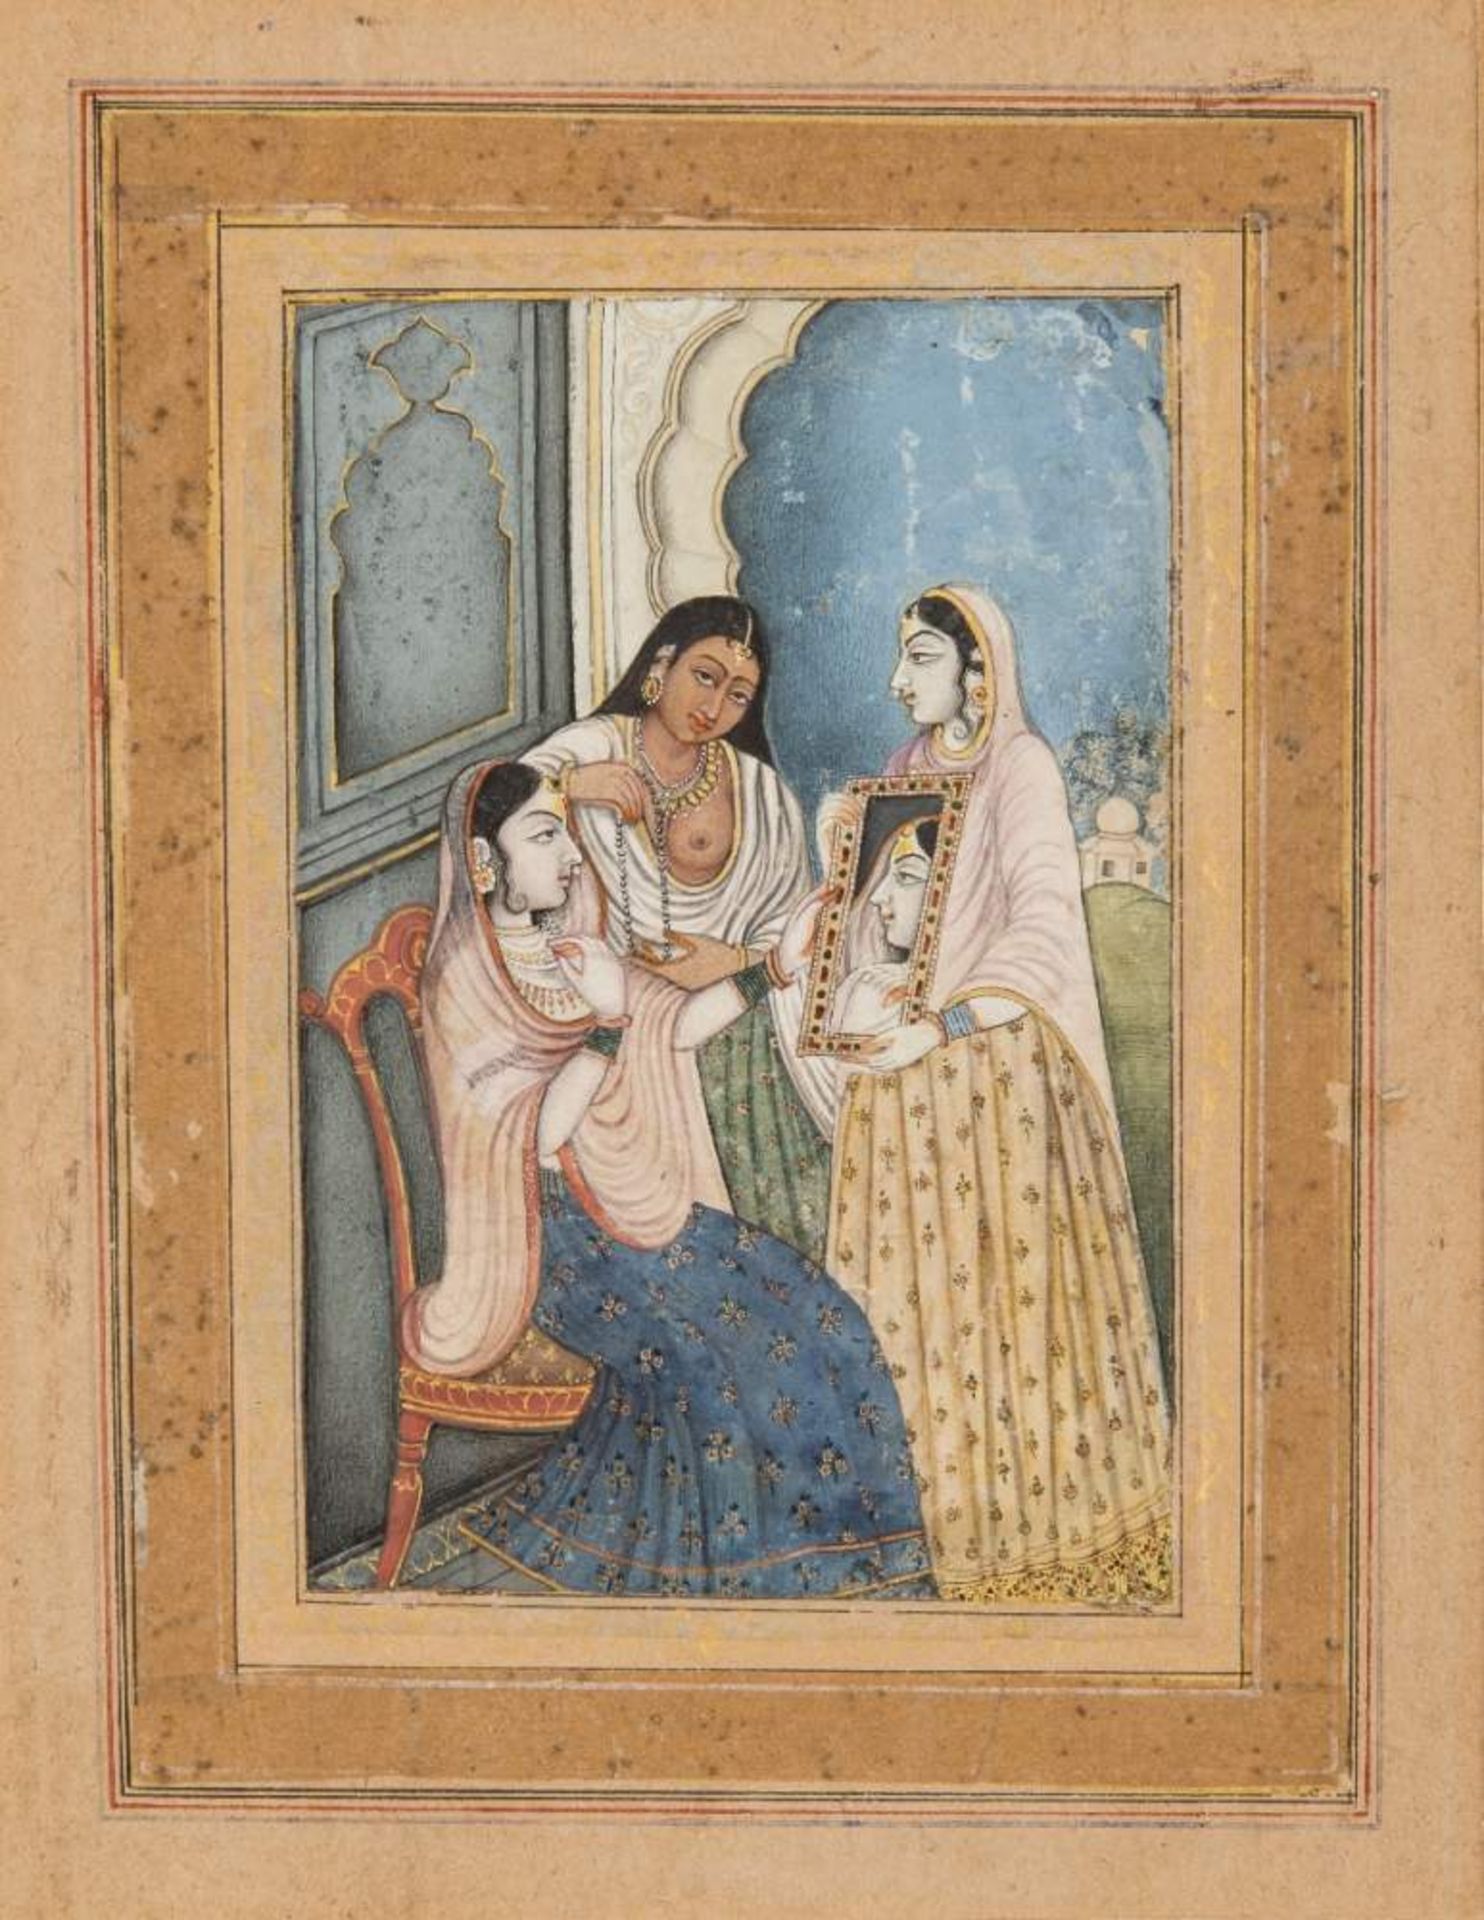 NOBLE DAME BETRACHTET SICH IM SPIEGELMiniatur-Malerei mit Farben und etwas Gold. Indien, 19. Jh.